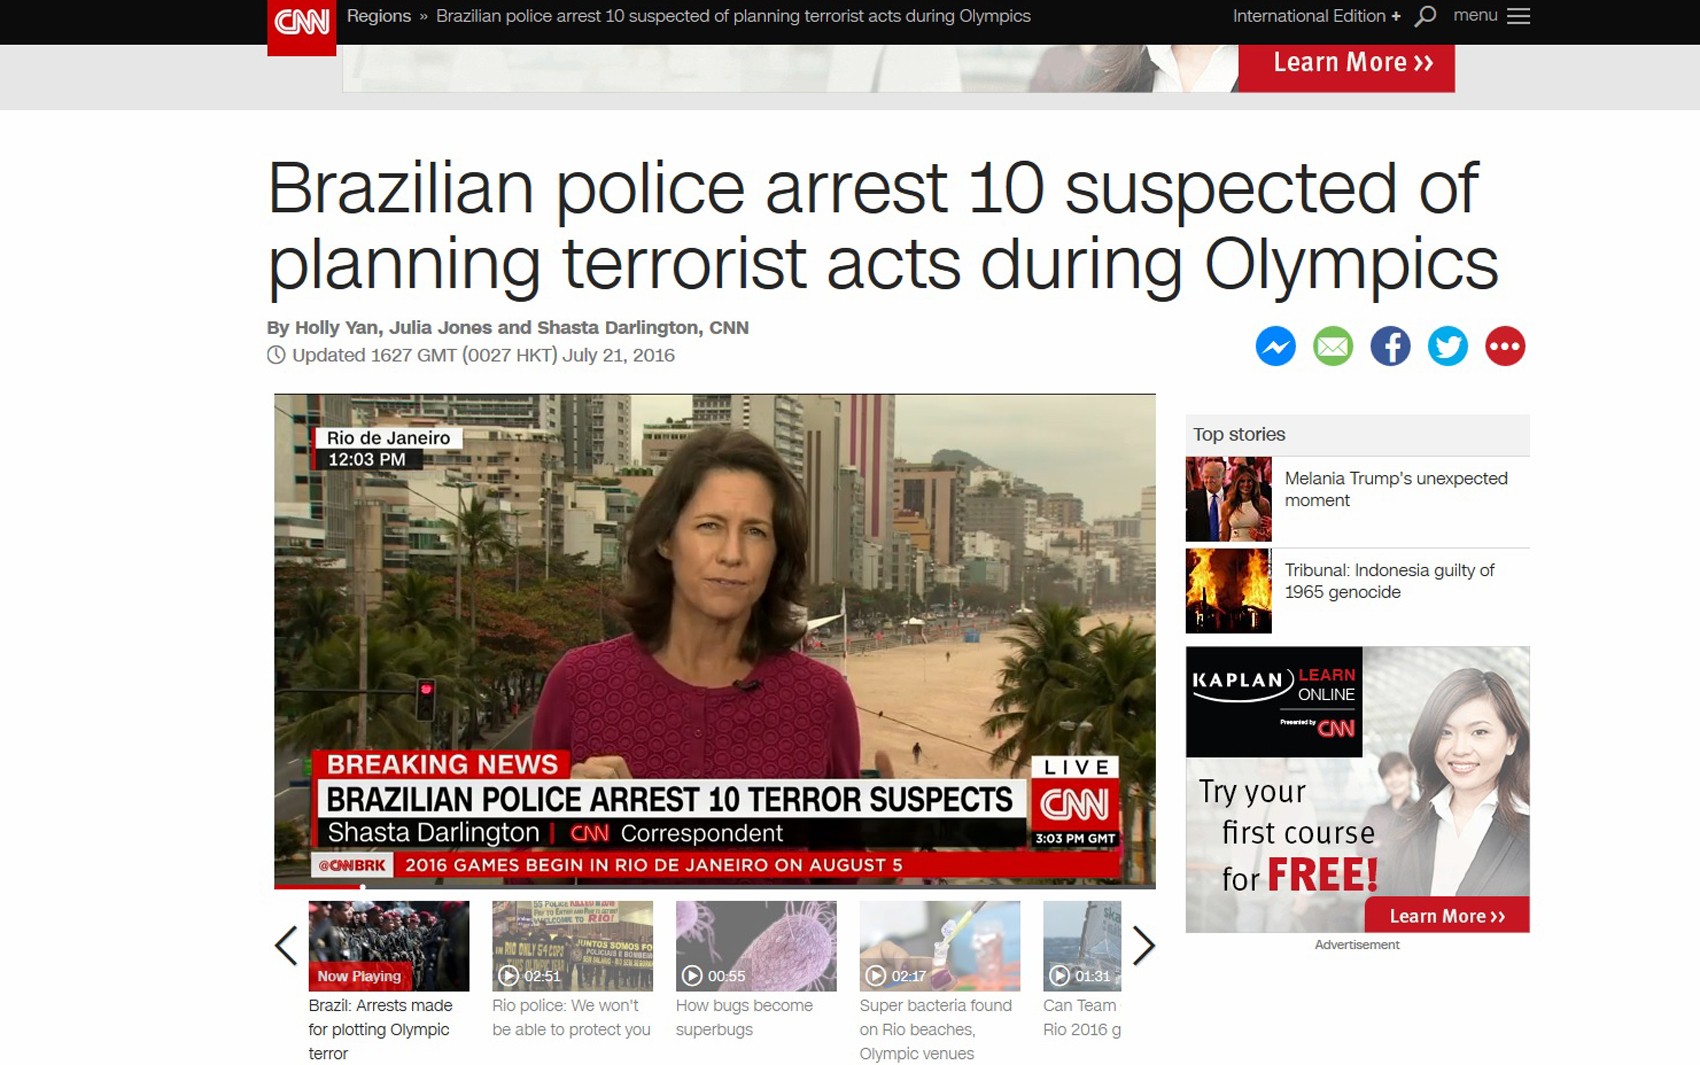 Canal americano CNN repercute prisão de suspeitos de ligação com terrorismo no Brasil